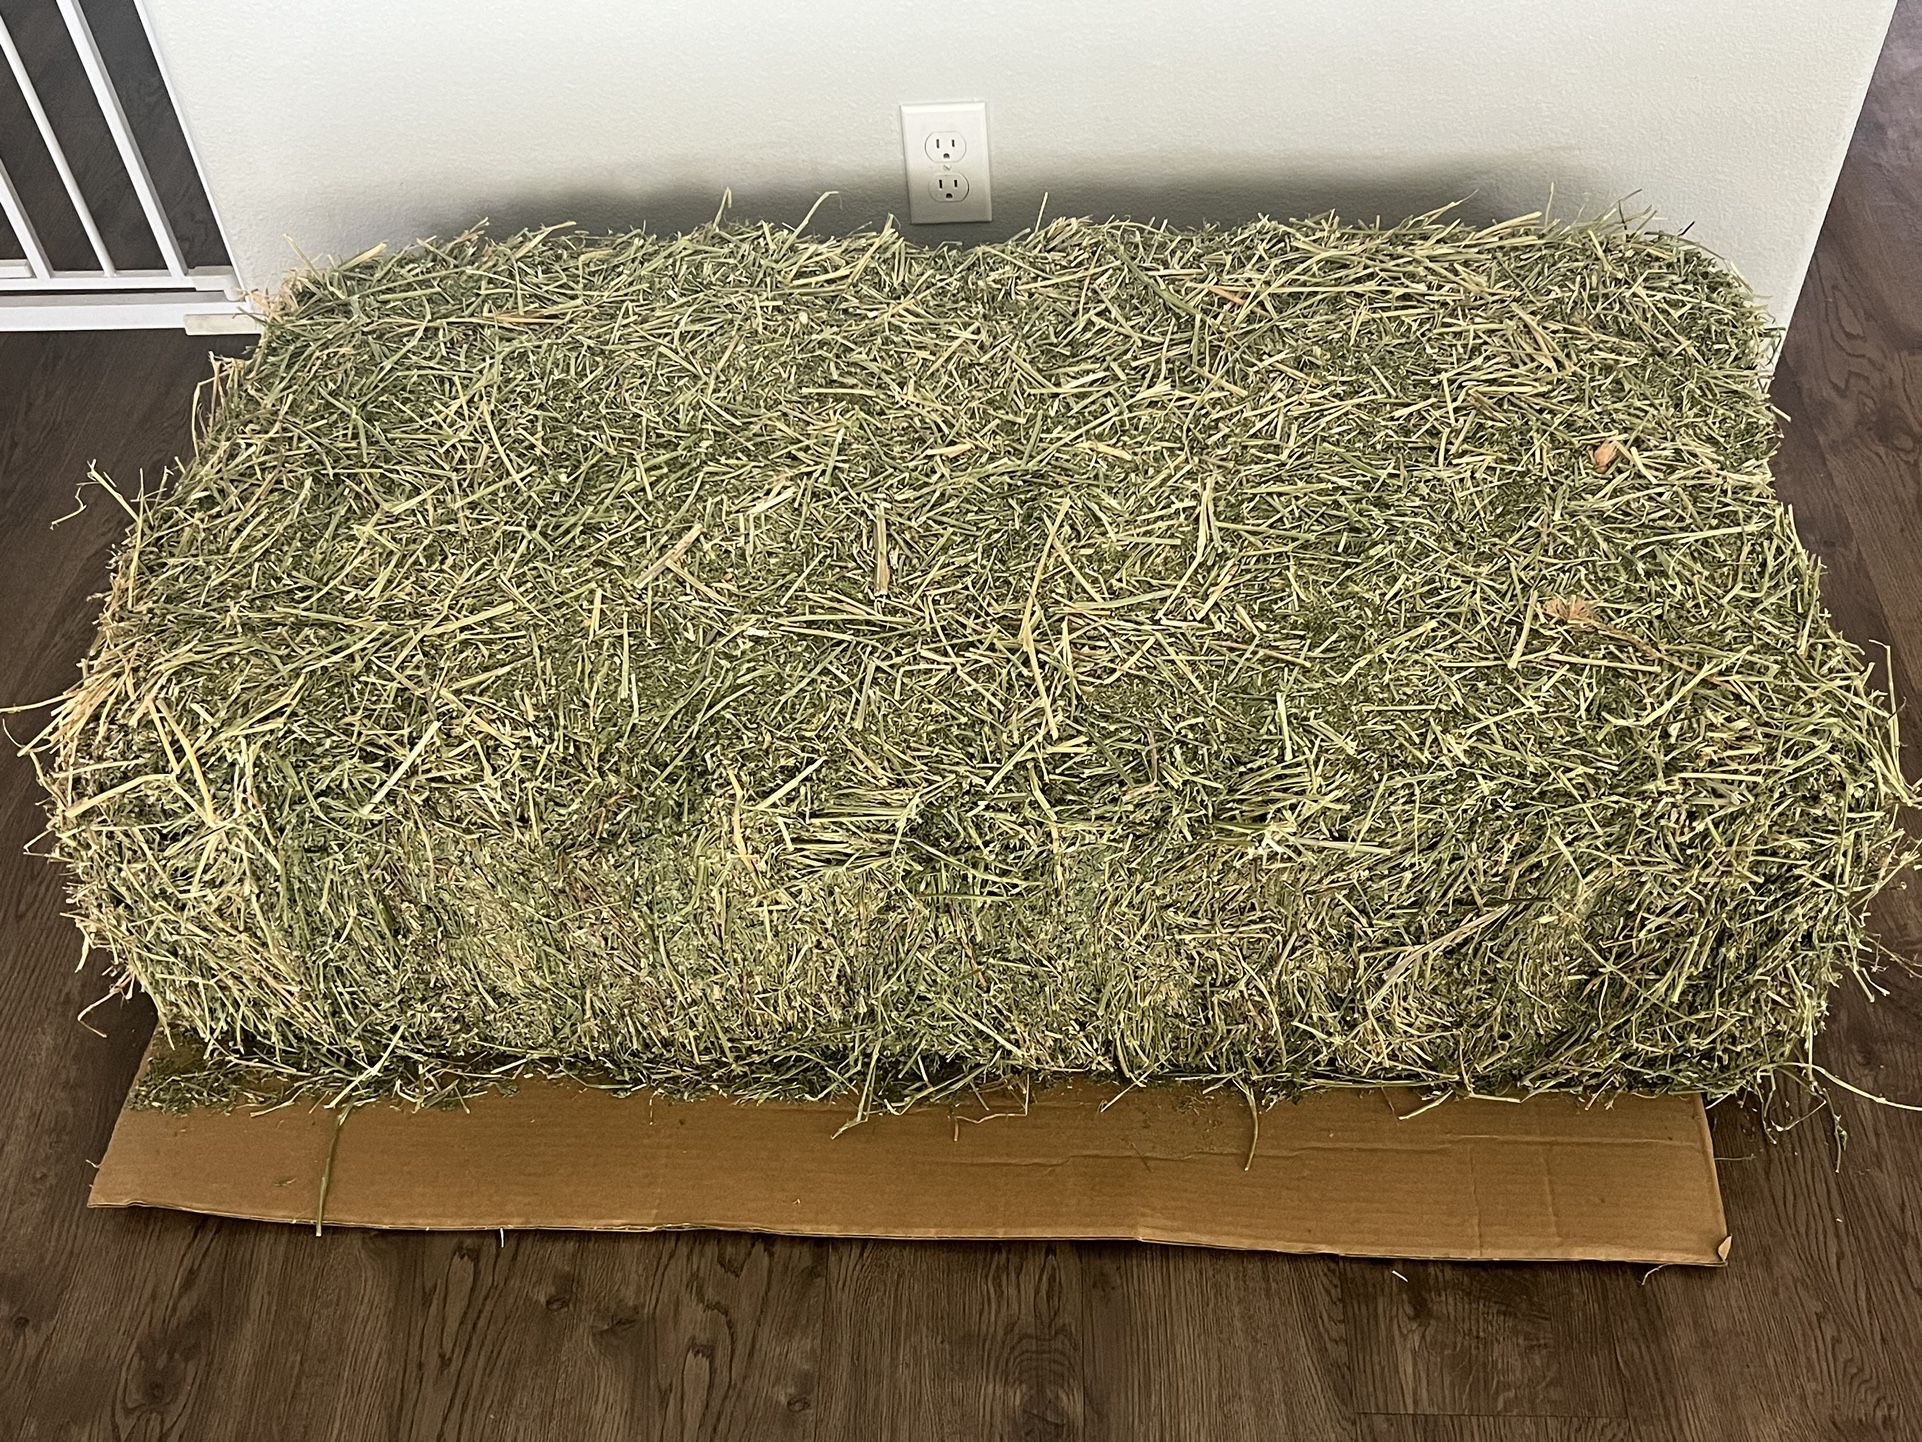 Free Alfalfa Hay Feed